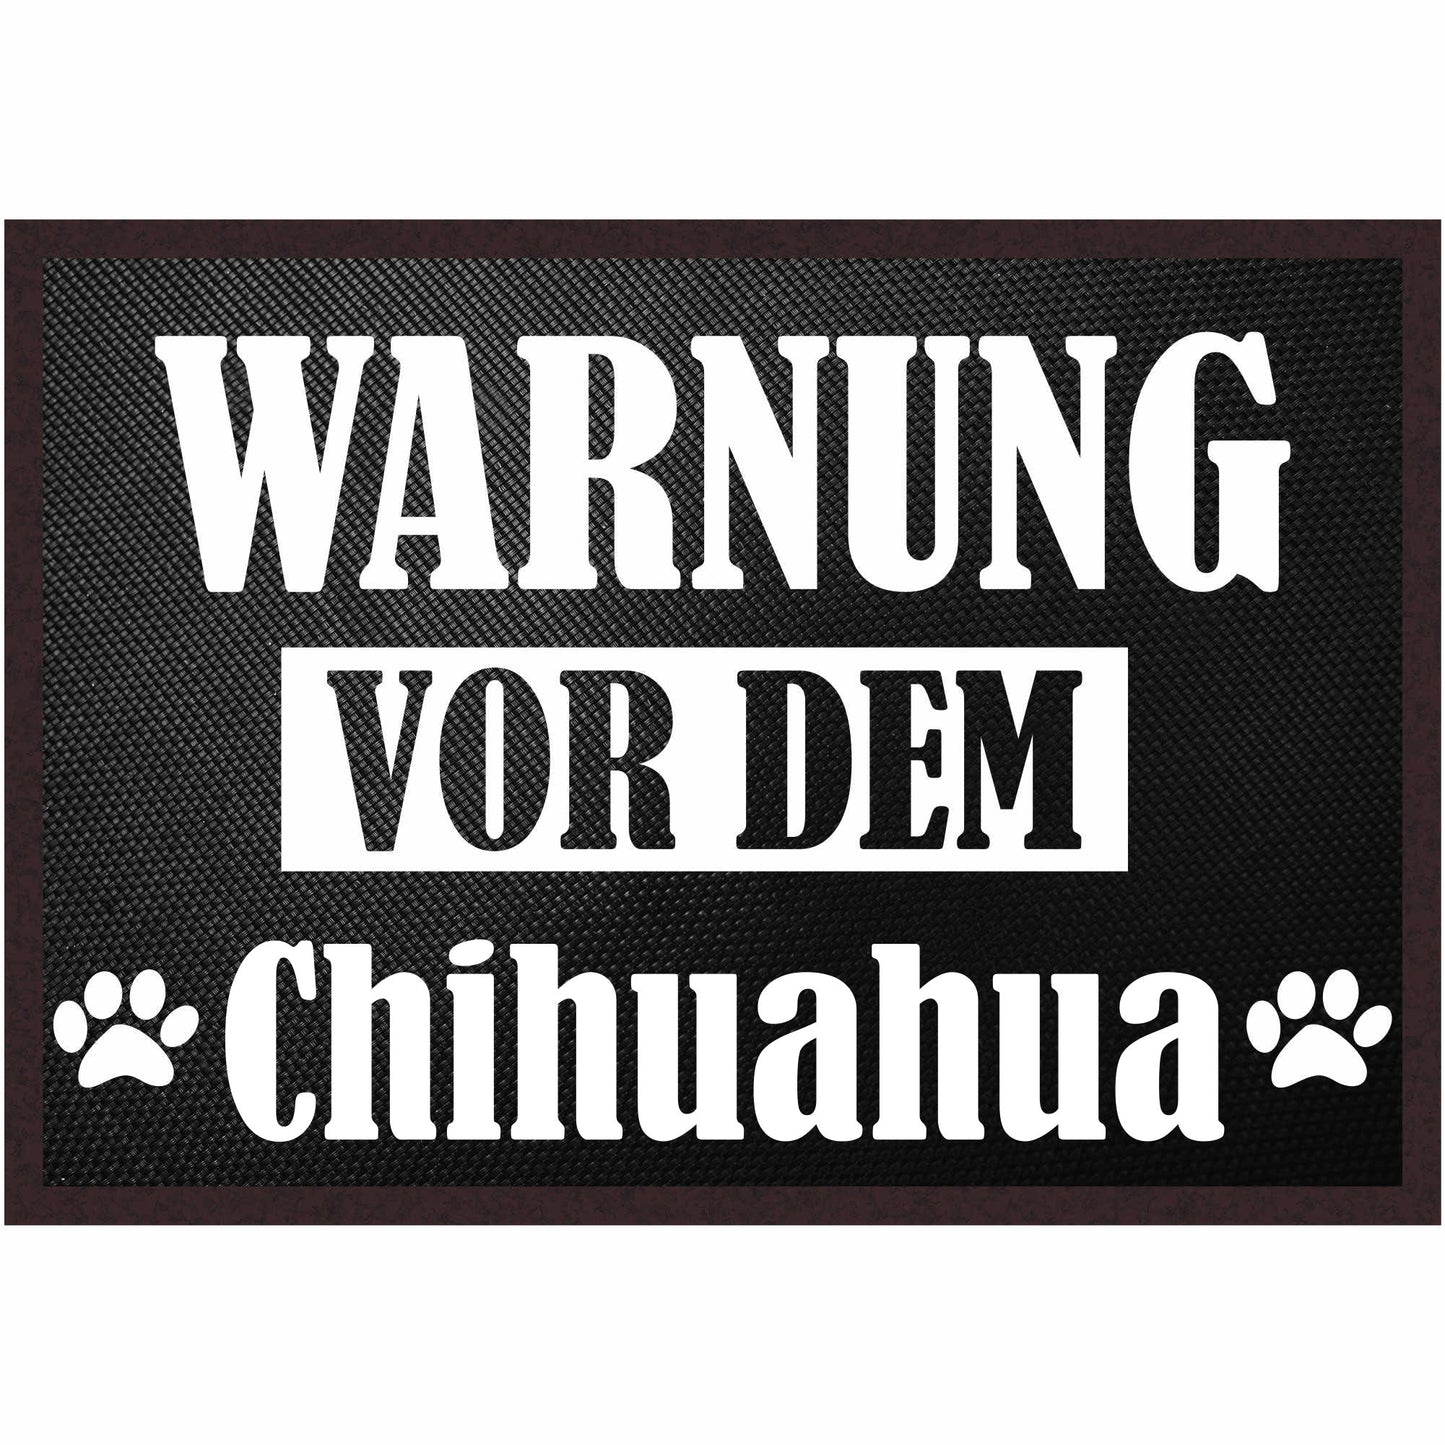 Fussmatte Hund - Chihuahua - 50x35 cm mit lustigem Spruch